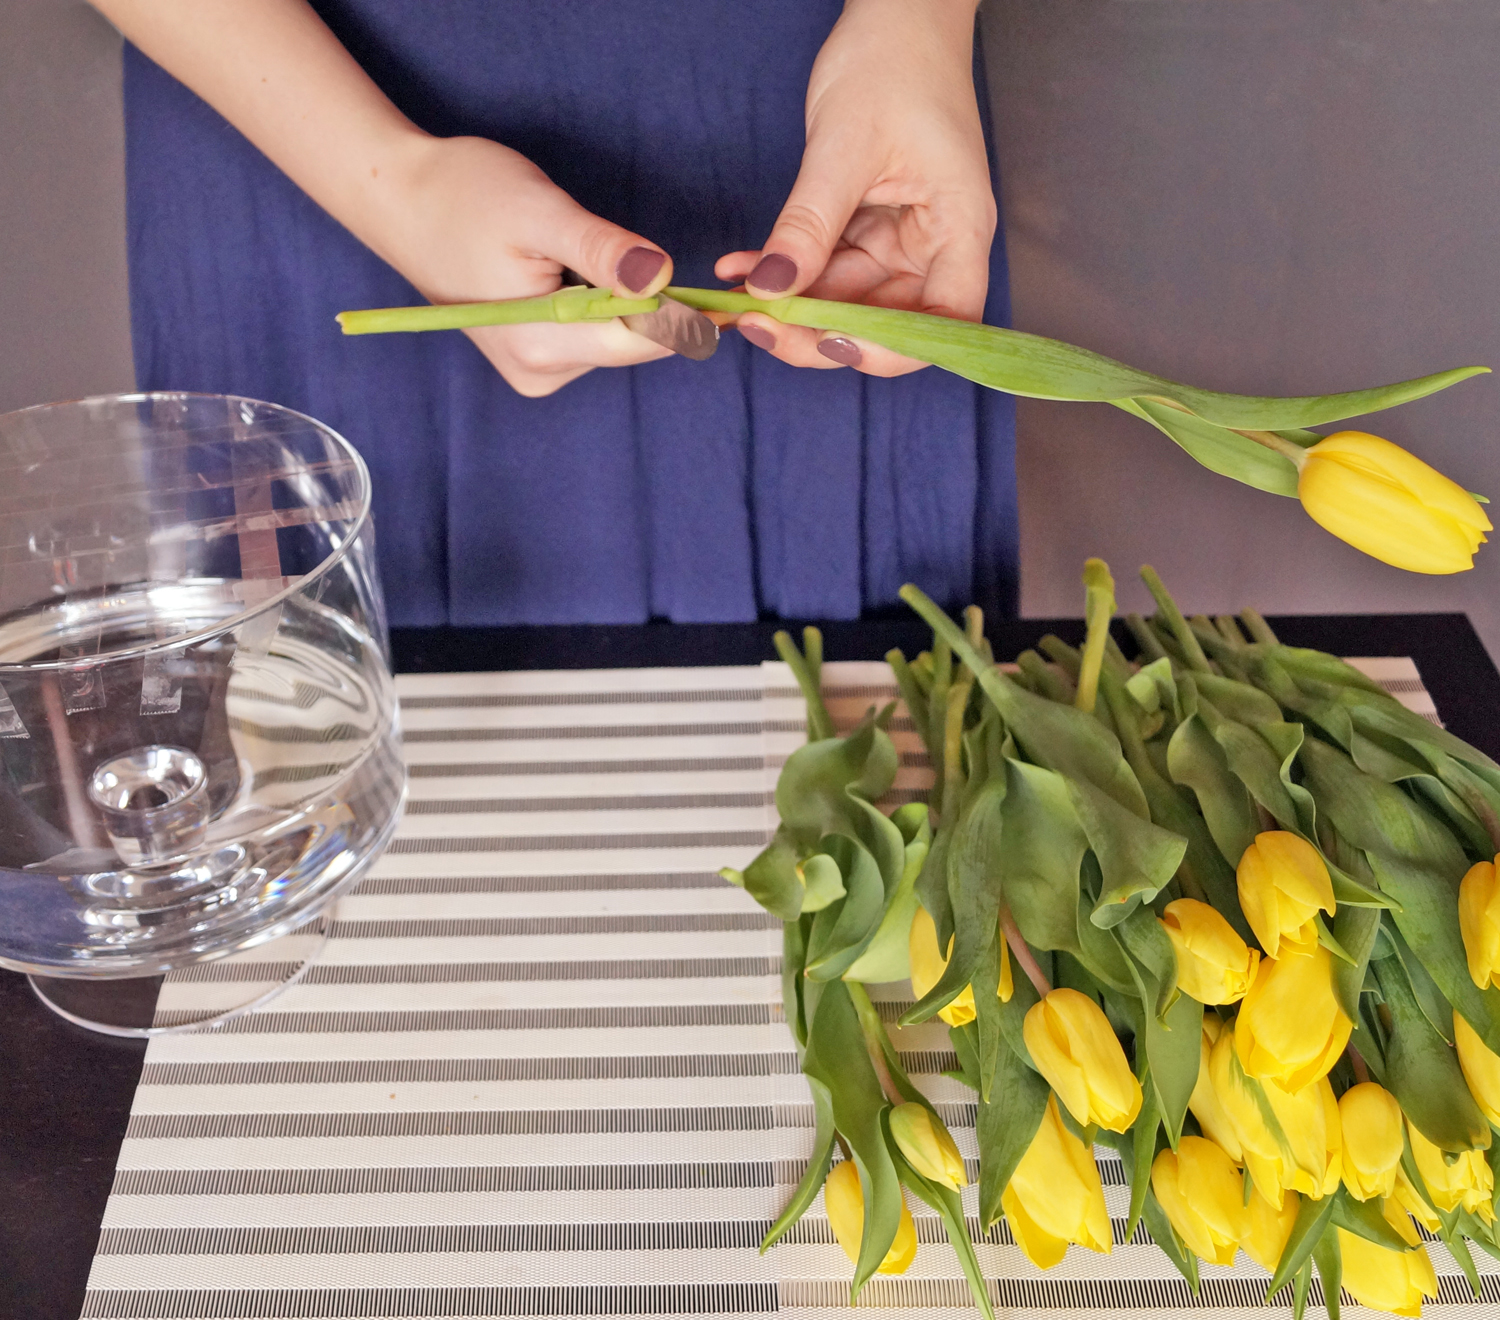 Tulipany w wazonie, - co zrobić, żeby długo stały